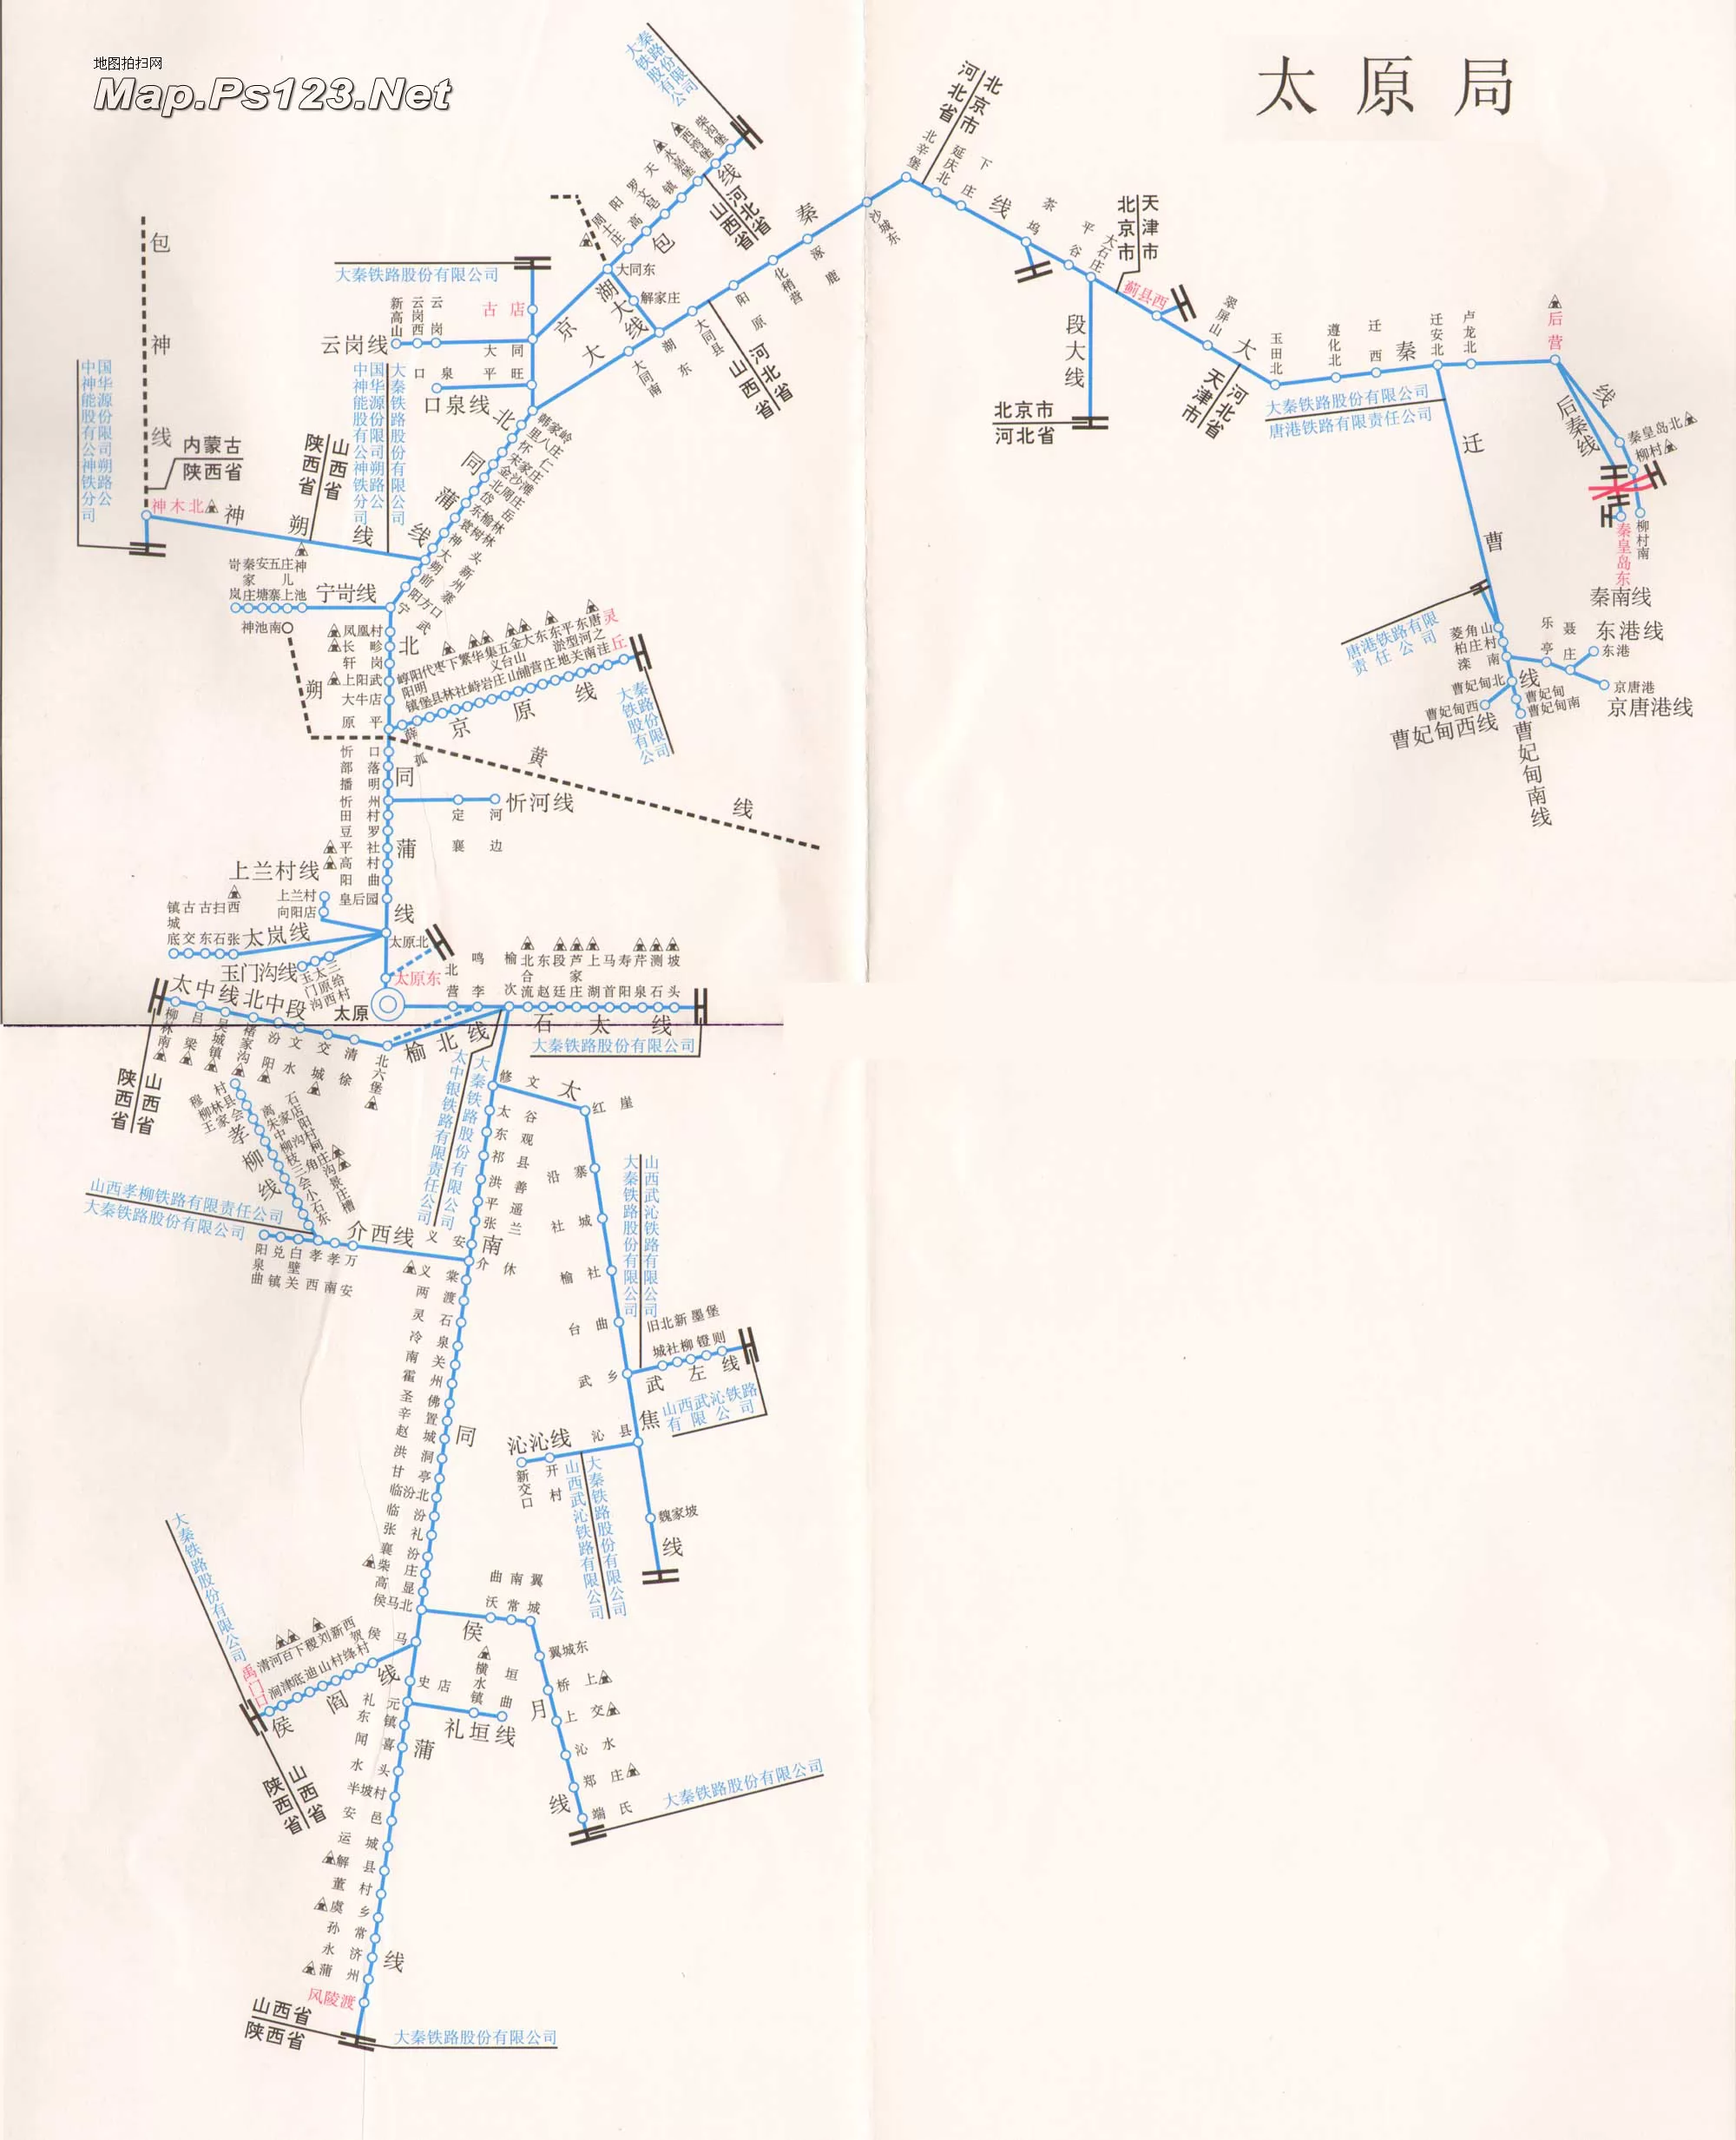 太原局管辖的铁路线路图